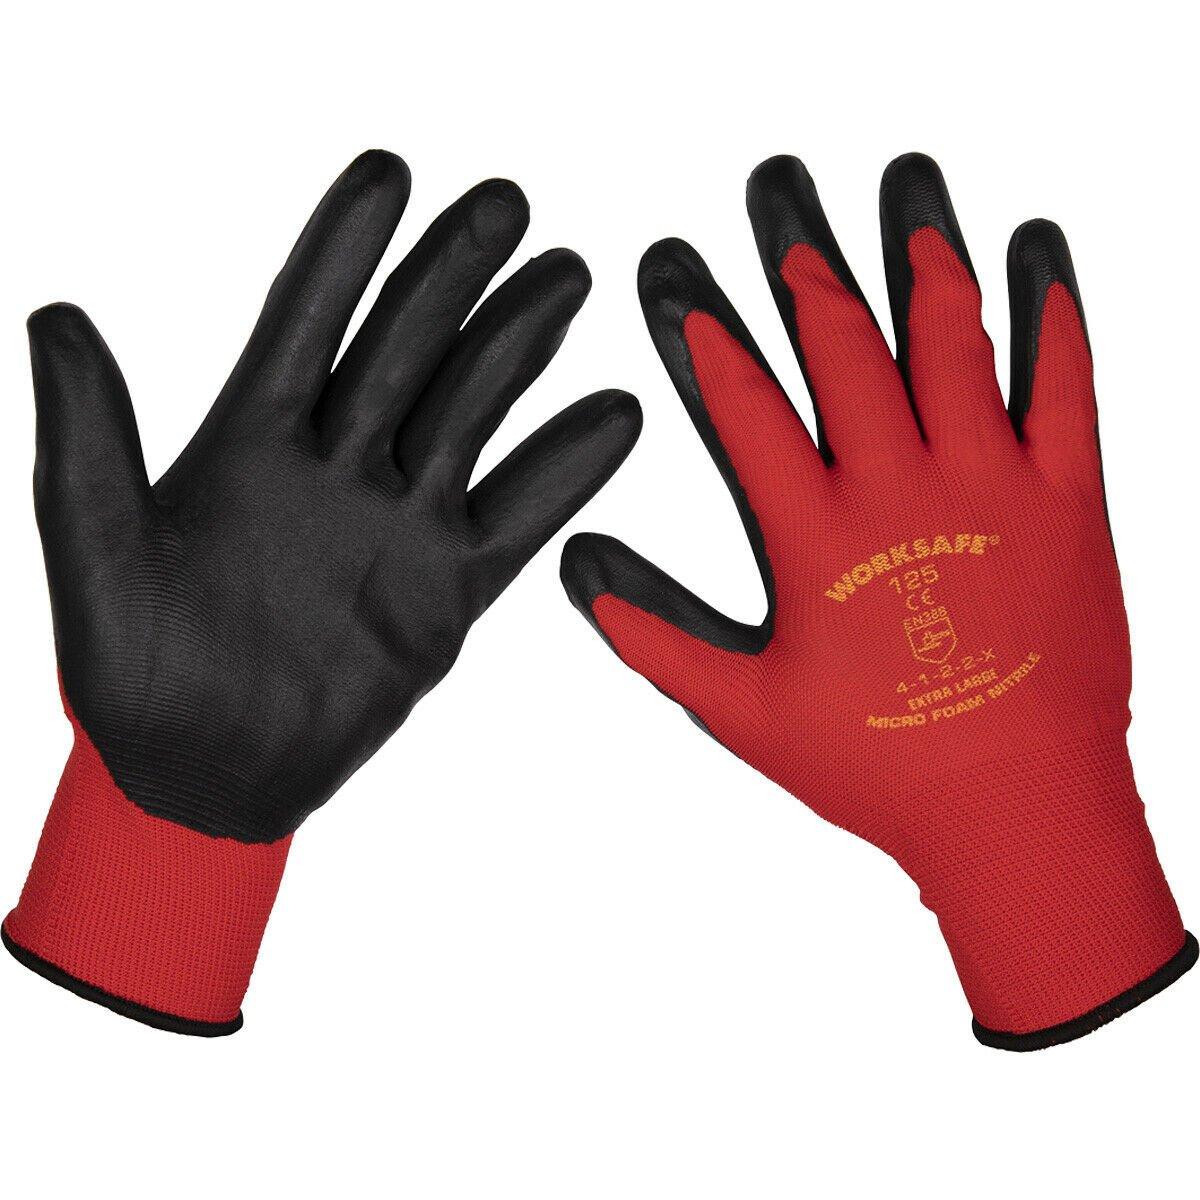 12 ПАР гибких перчаток из нитриловой пены для рук, размер XL, защита от истирания Loops, мультиколор